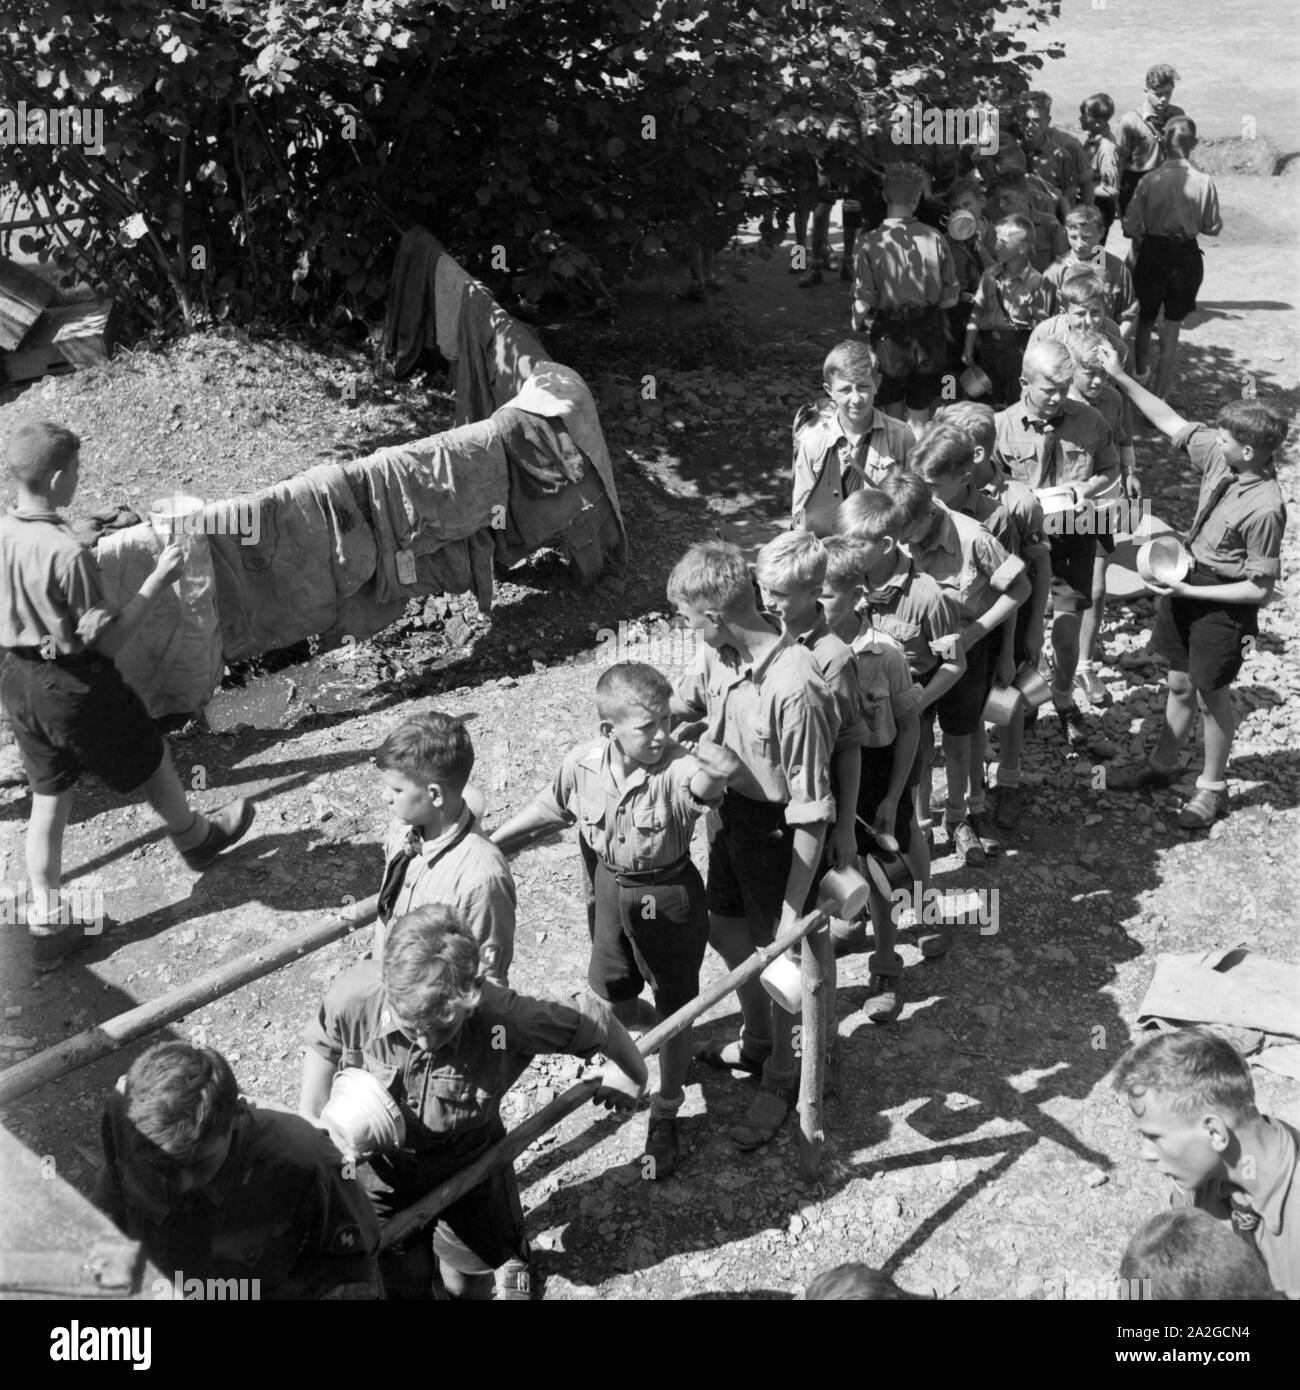 Hitlerjunge bei der Essensausgabe in der Nähe von Spitz in Niederösterreich, Österreich 1930er Jahre. Gioventù Hitleriana accodamento per il pranzo nel loro accampamento nei pressi di Spitz, Austria Inferiore, Austria 1930s. Foto Stock